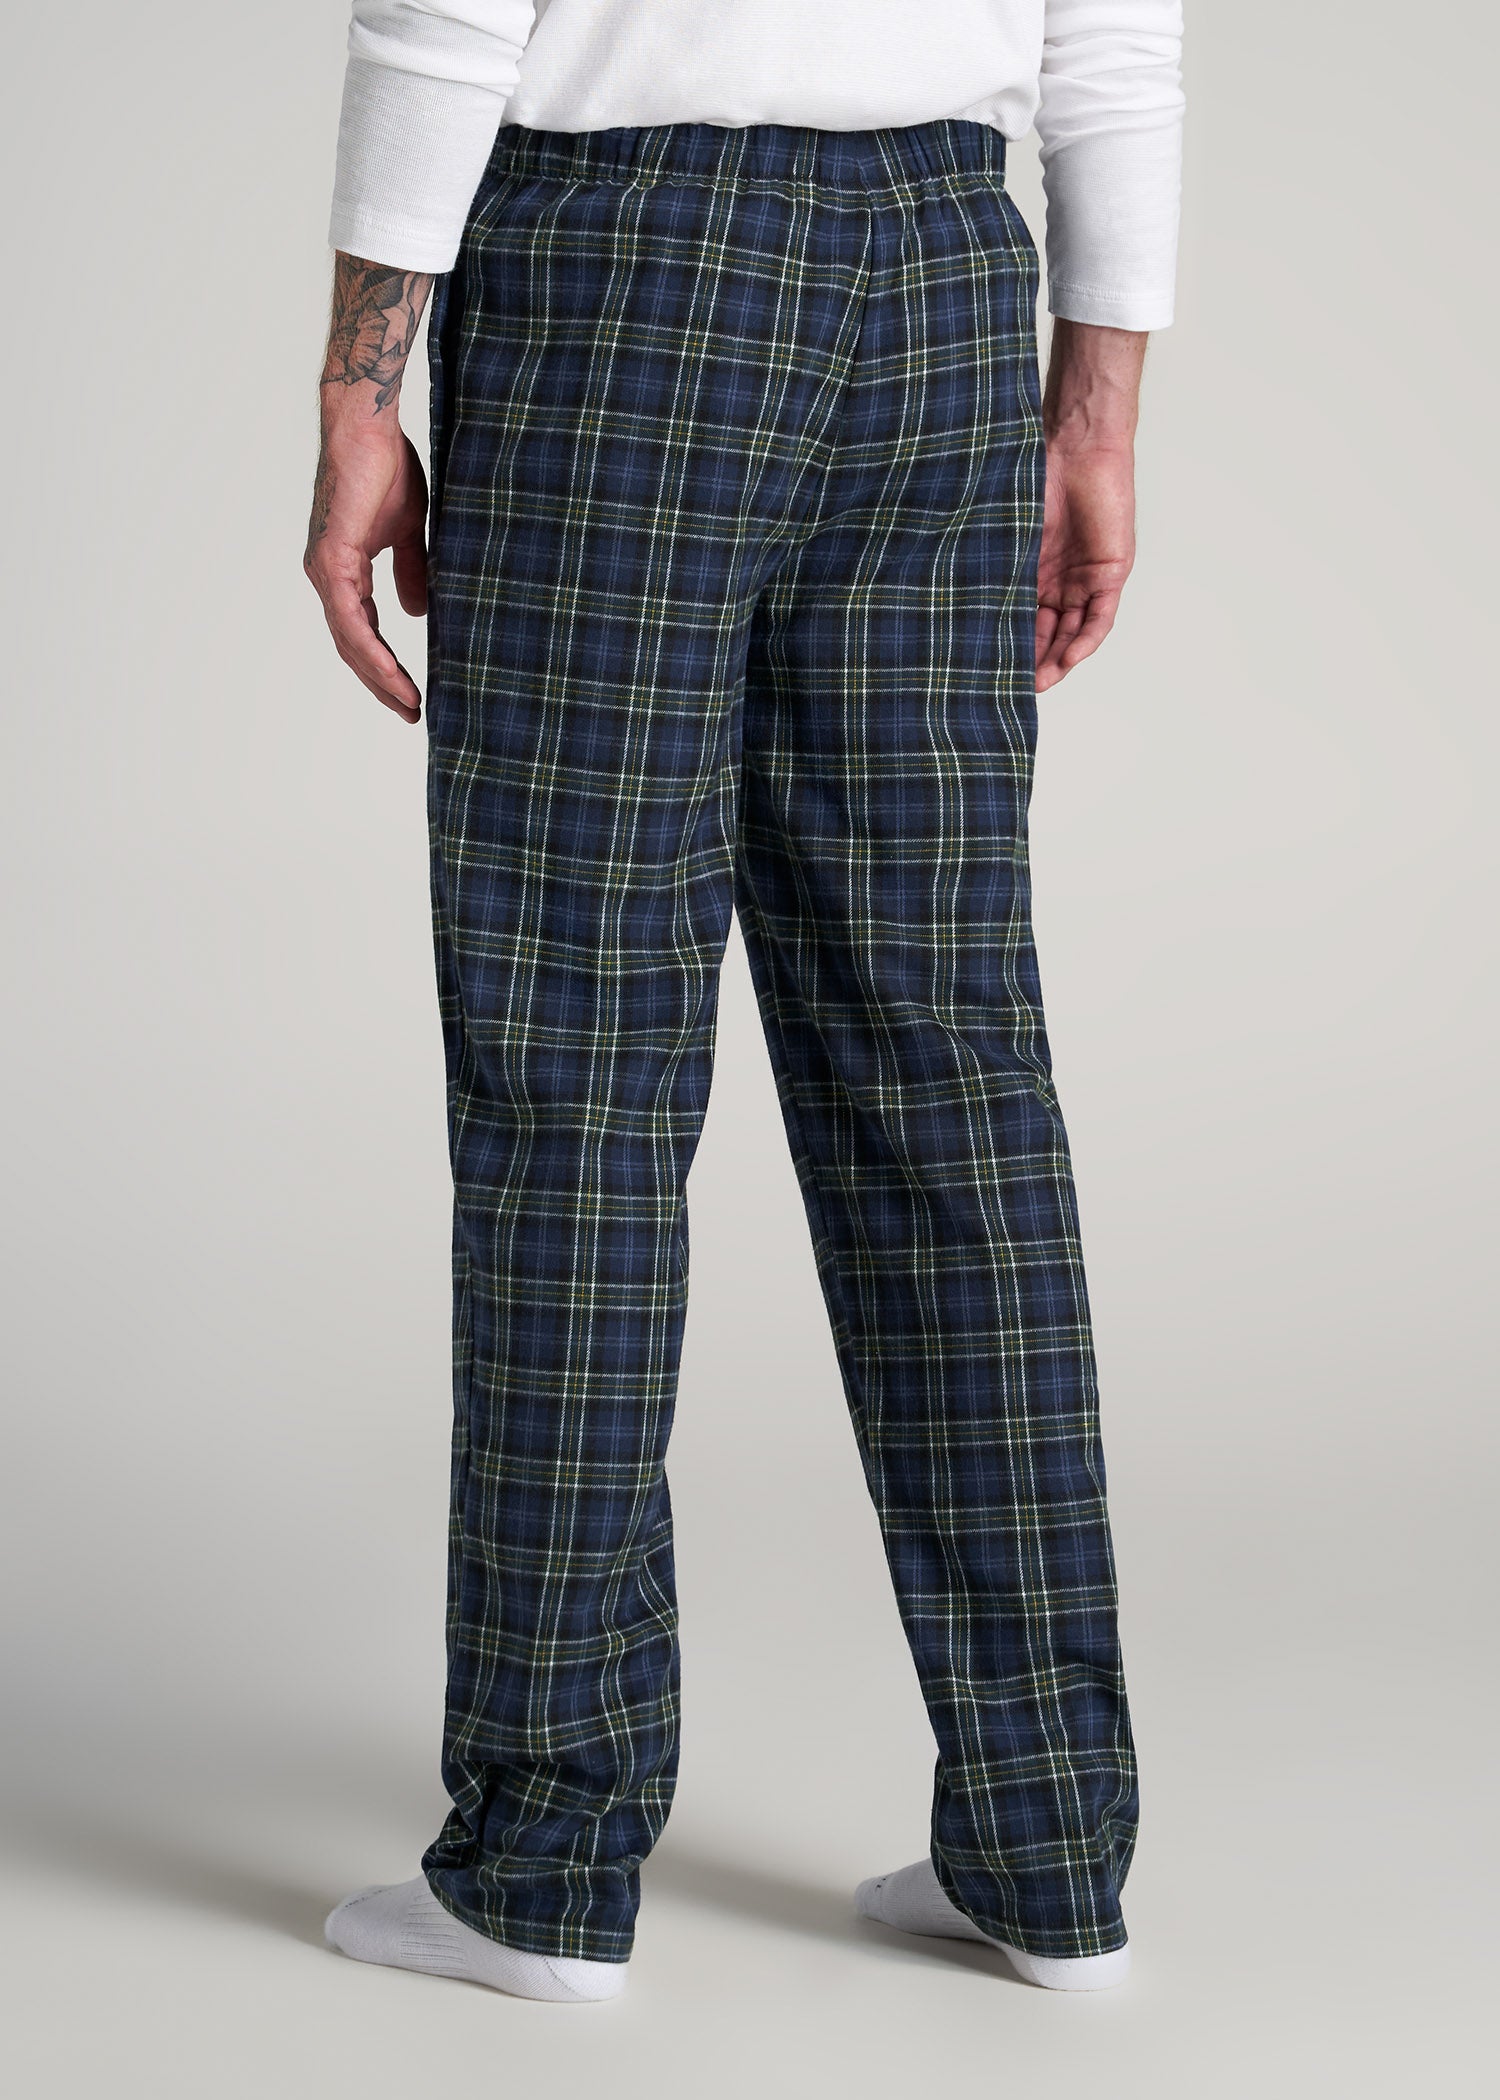 Tall Men's Pajama Bottom: Flannel, Classic Plaid (Green/Blue) Medium / 2X-Tall - 40